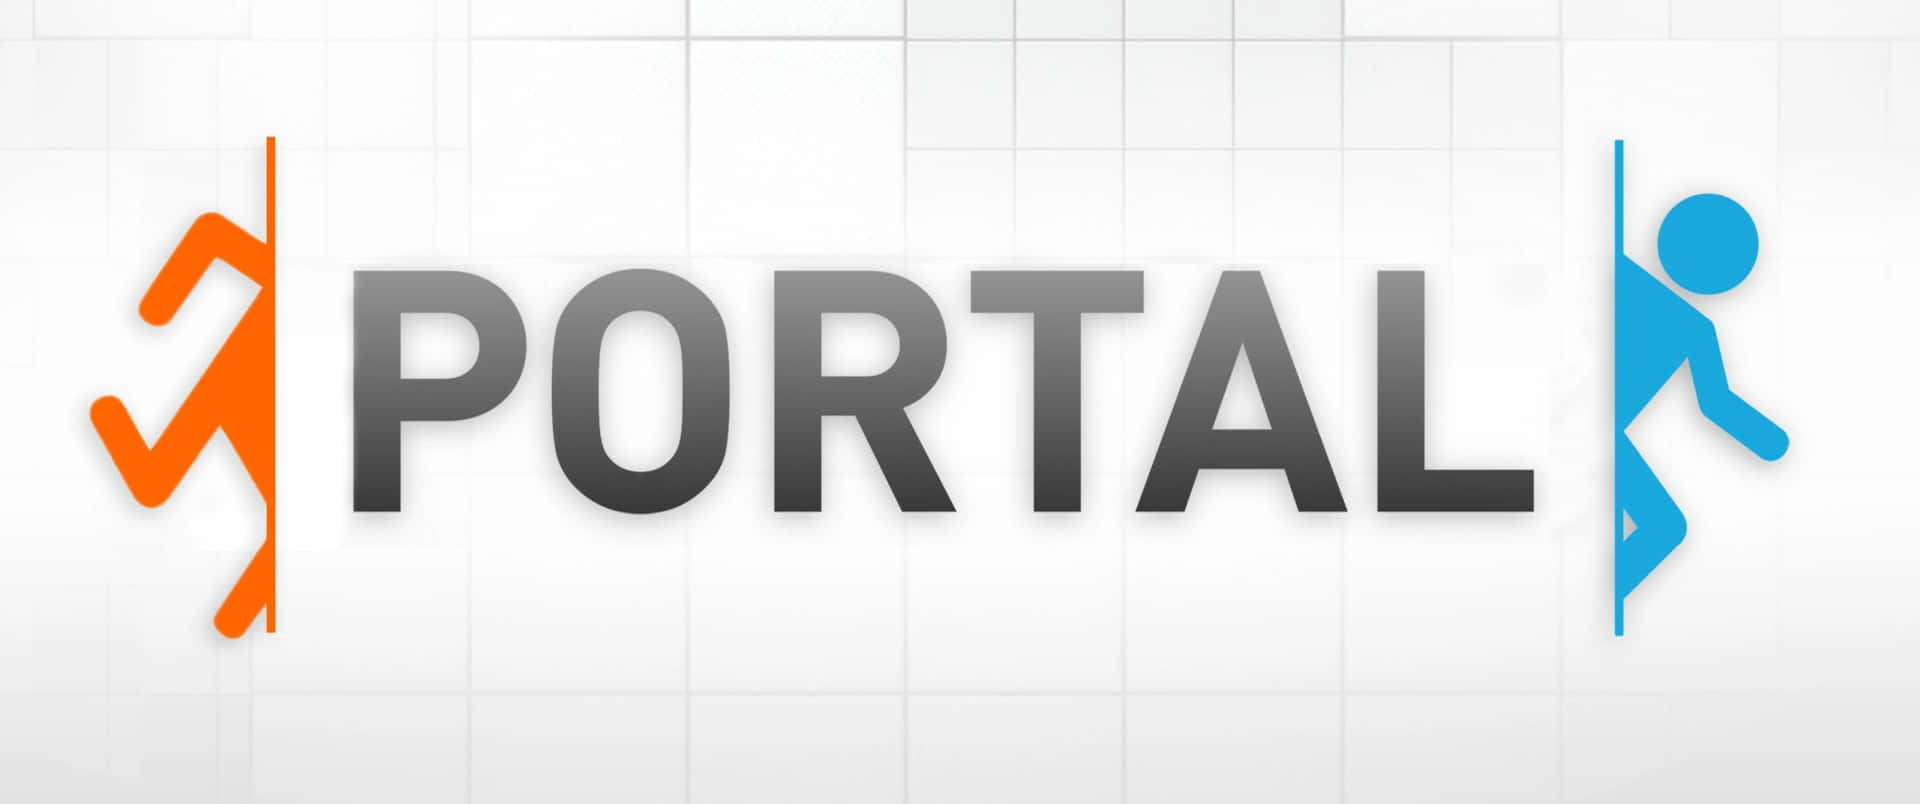 Portal2 - Bakgrundsbild Med Abstrakta Kuber Och Sfärer.